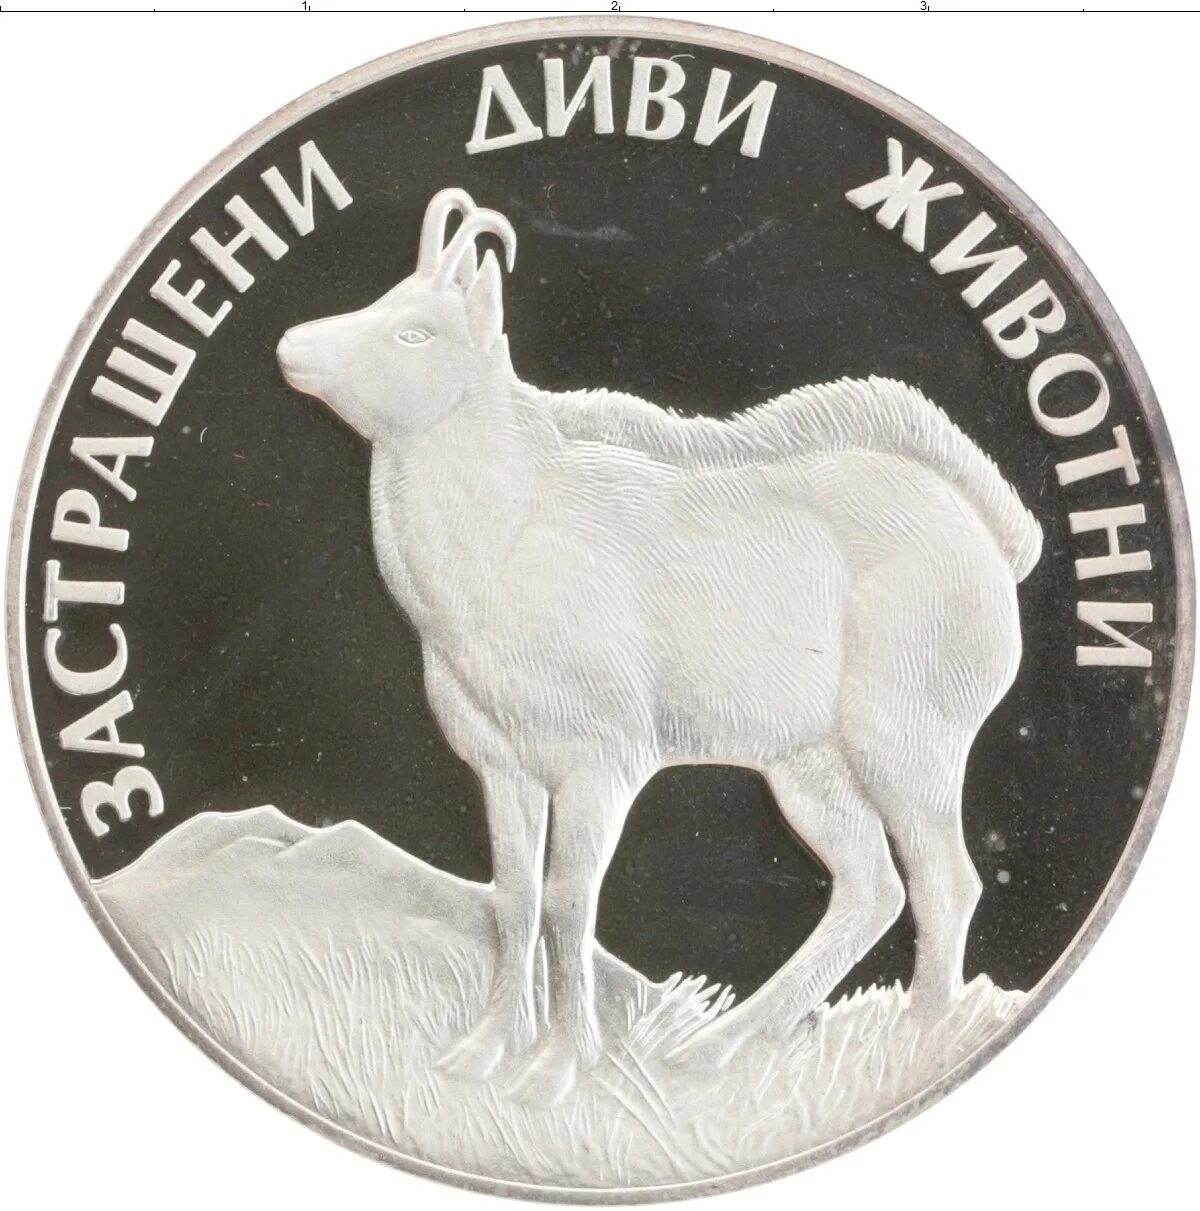 Лев 1993. 100 Левов Болгария. Монета 1 Лев 1993 Болгария. 100 Лев. Монета панчикопей серебряная со львом.